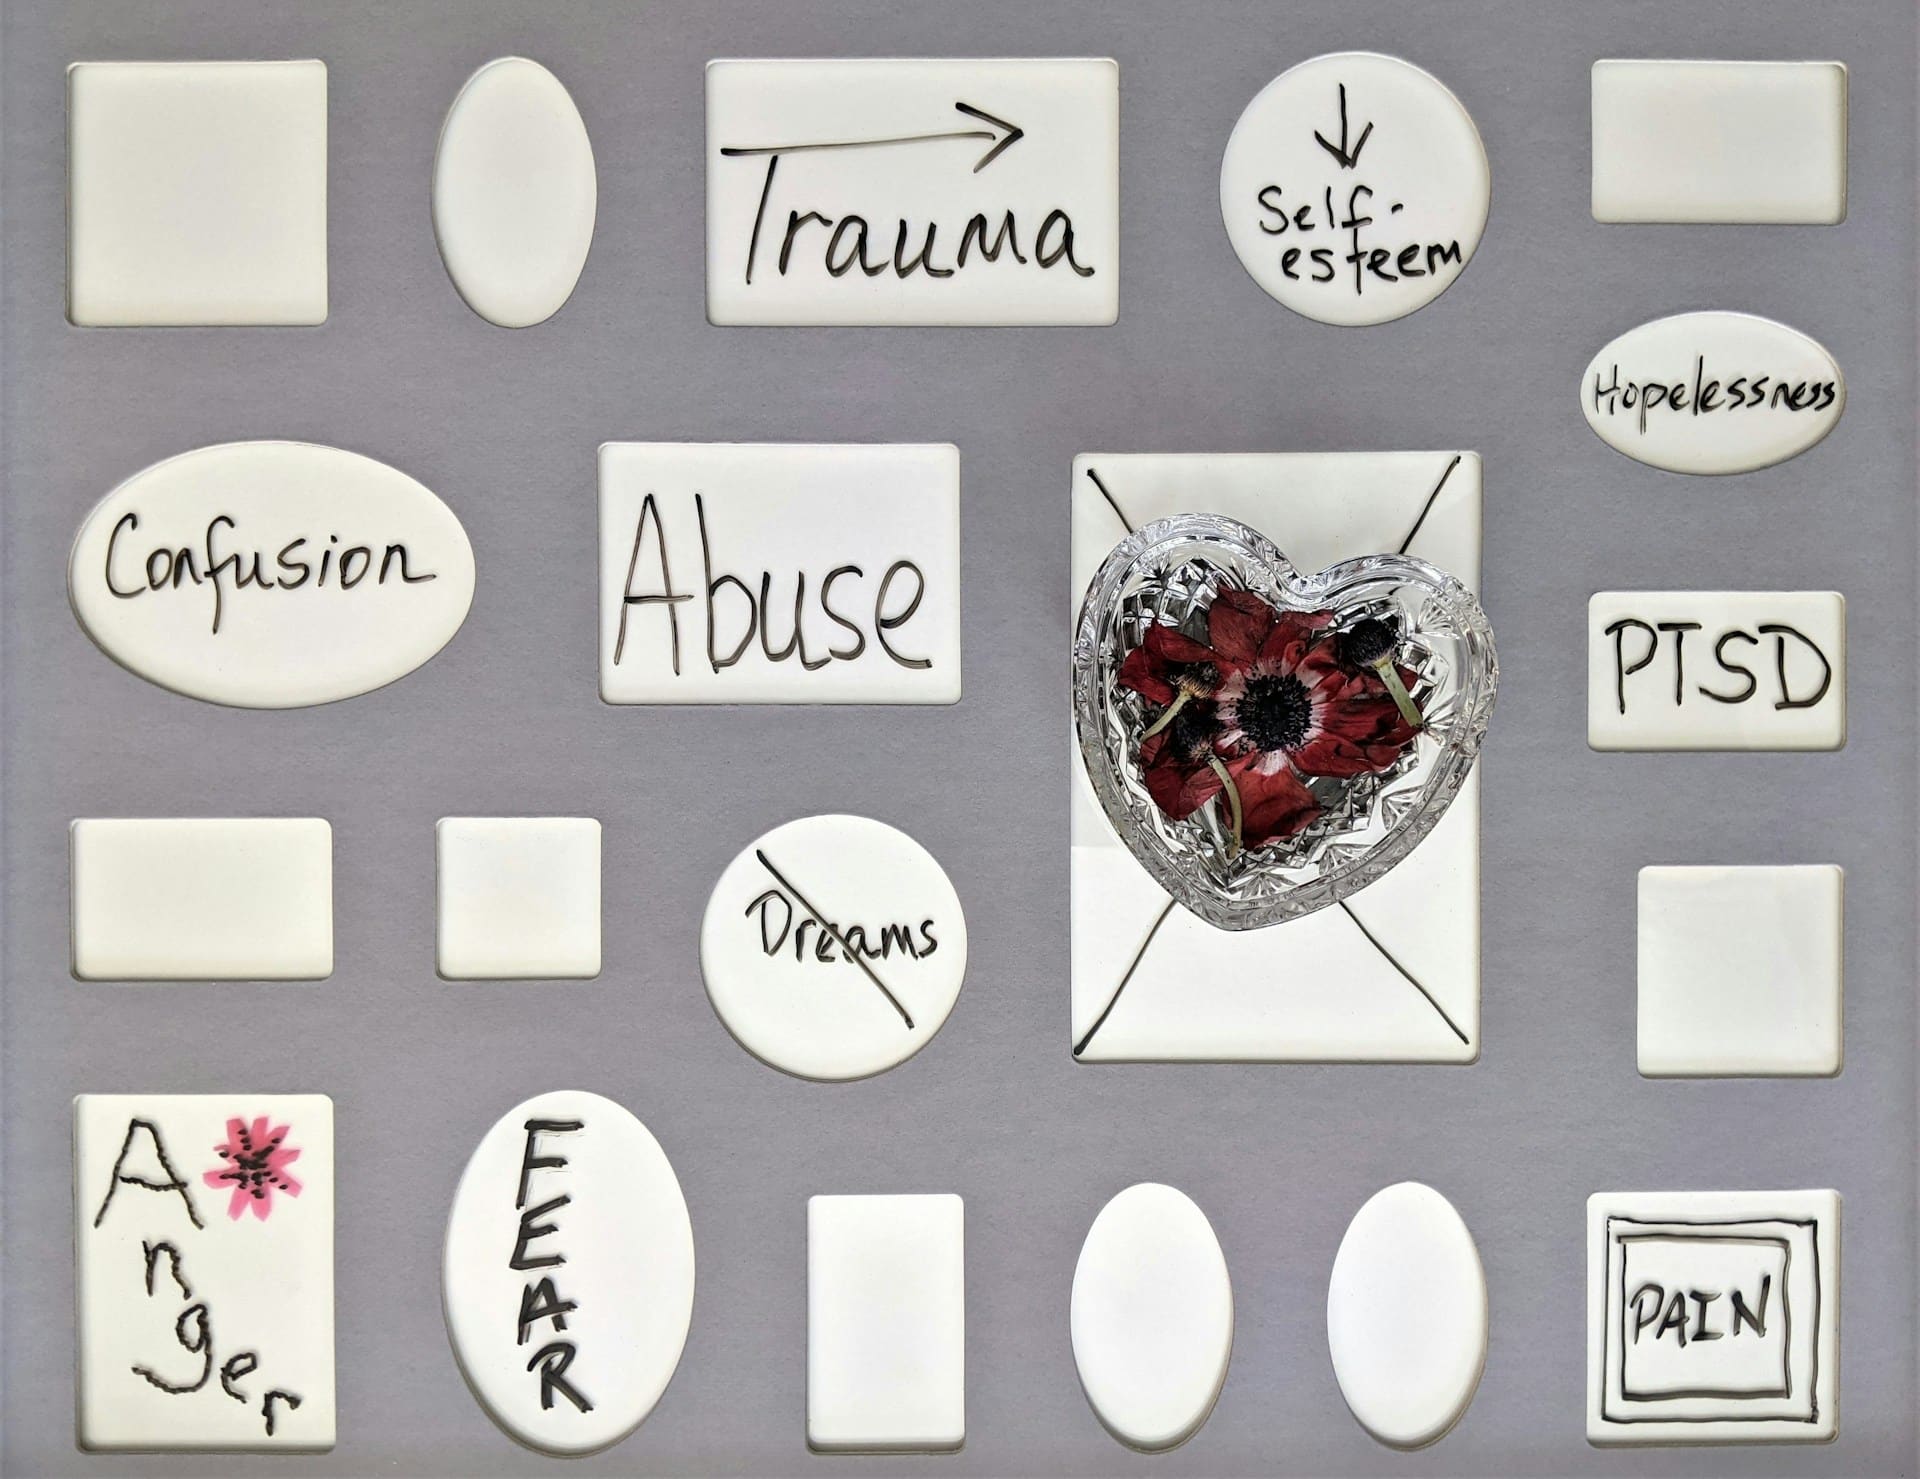 Ein Trauma bewältigen - Wie verläuft eine Traumatherapie?